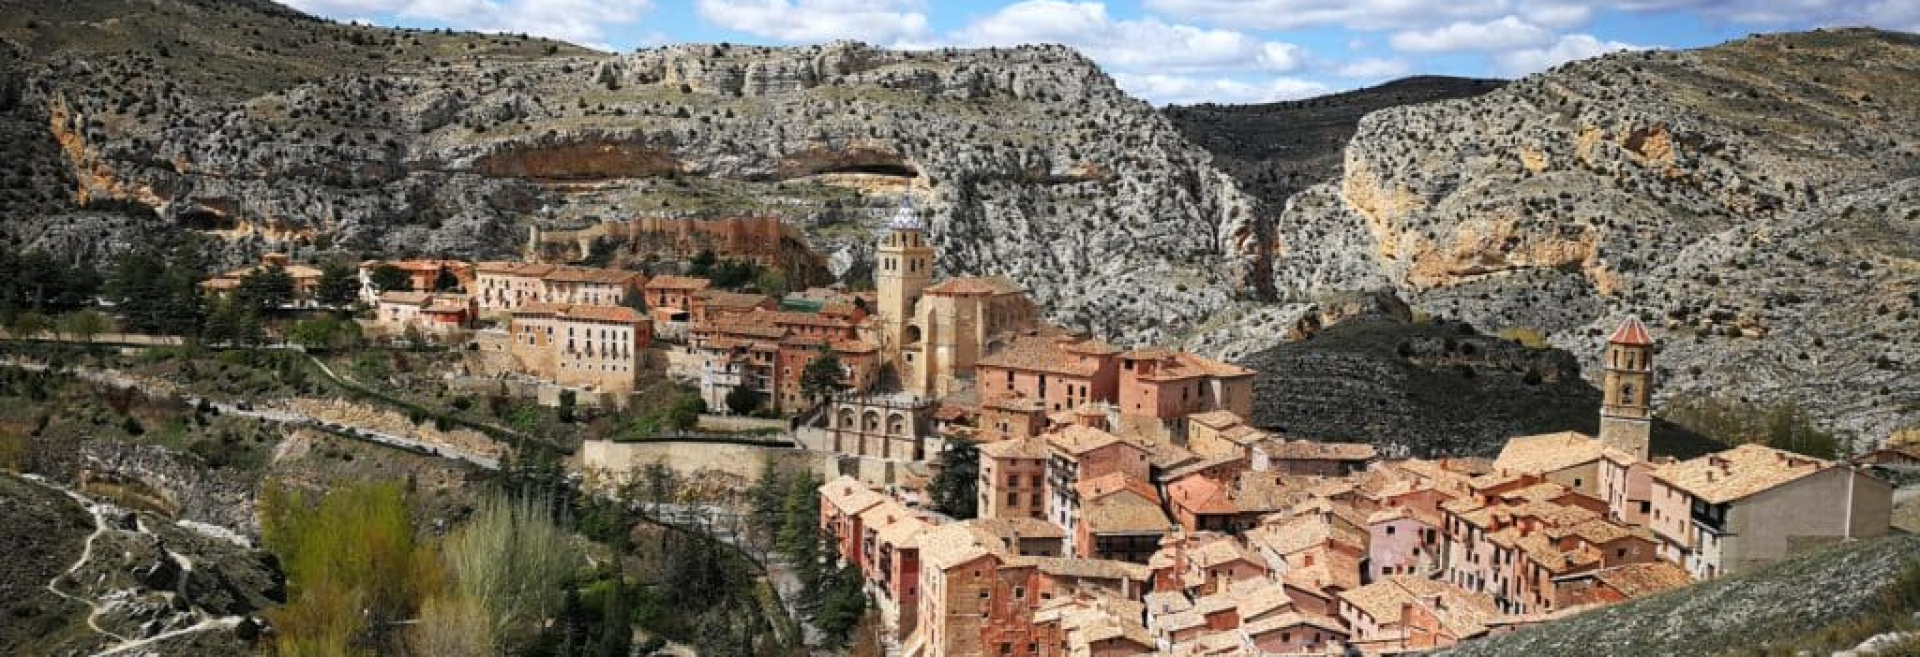 Viaje a Cuenca, Teruel y Albarracín, del 4 al 7 de mayo